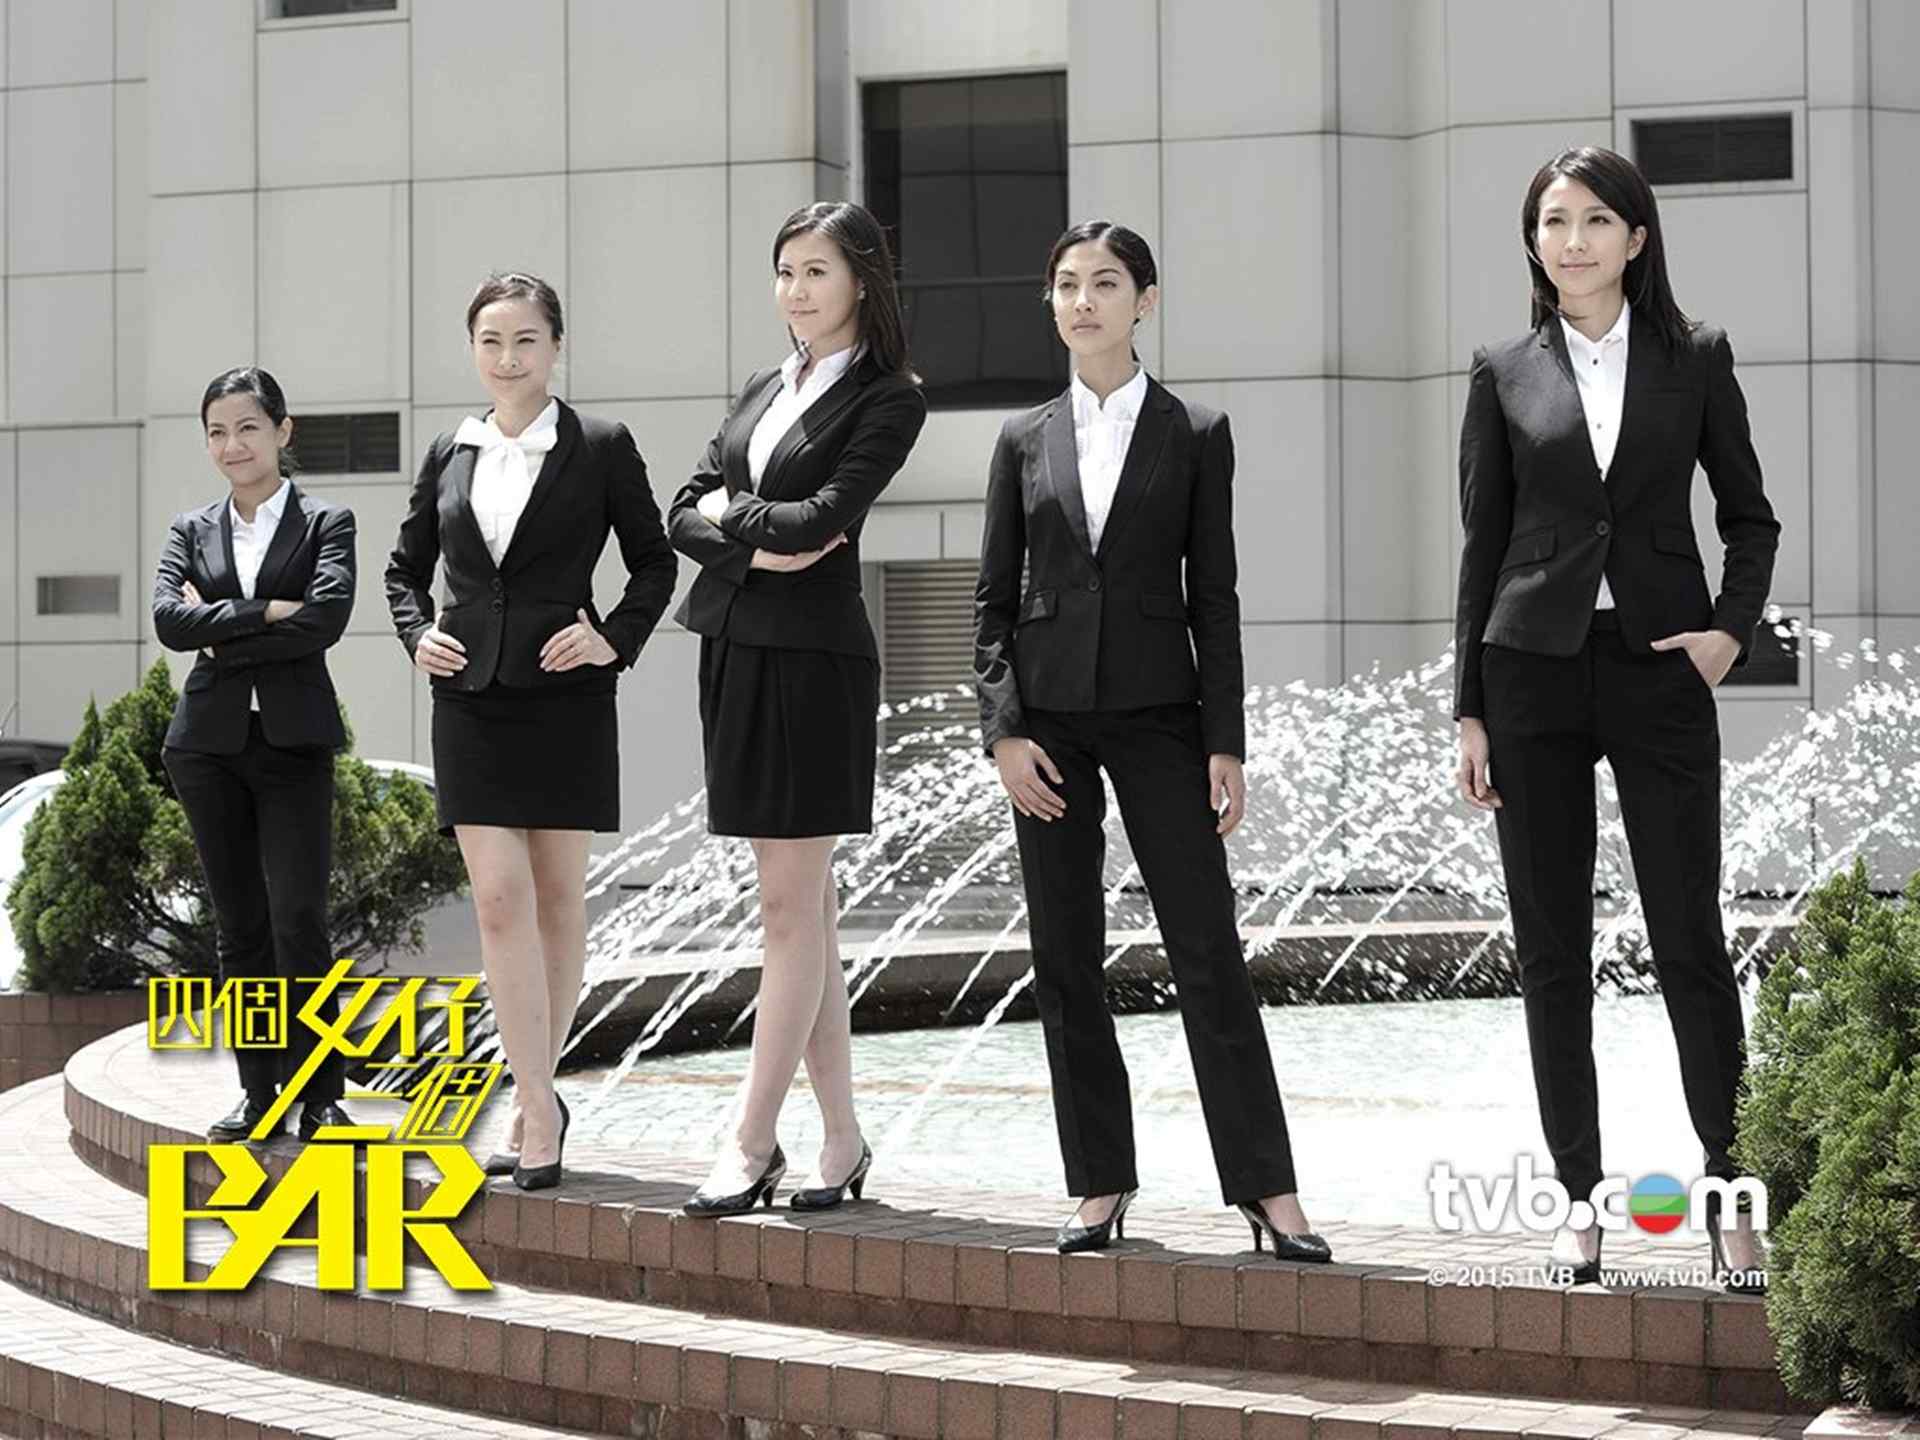 TVB电视四个女仔三个Bar参演女主角桌面壁纸下载